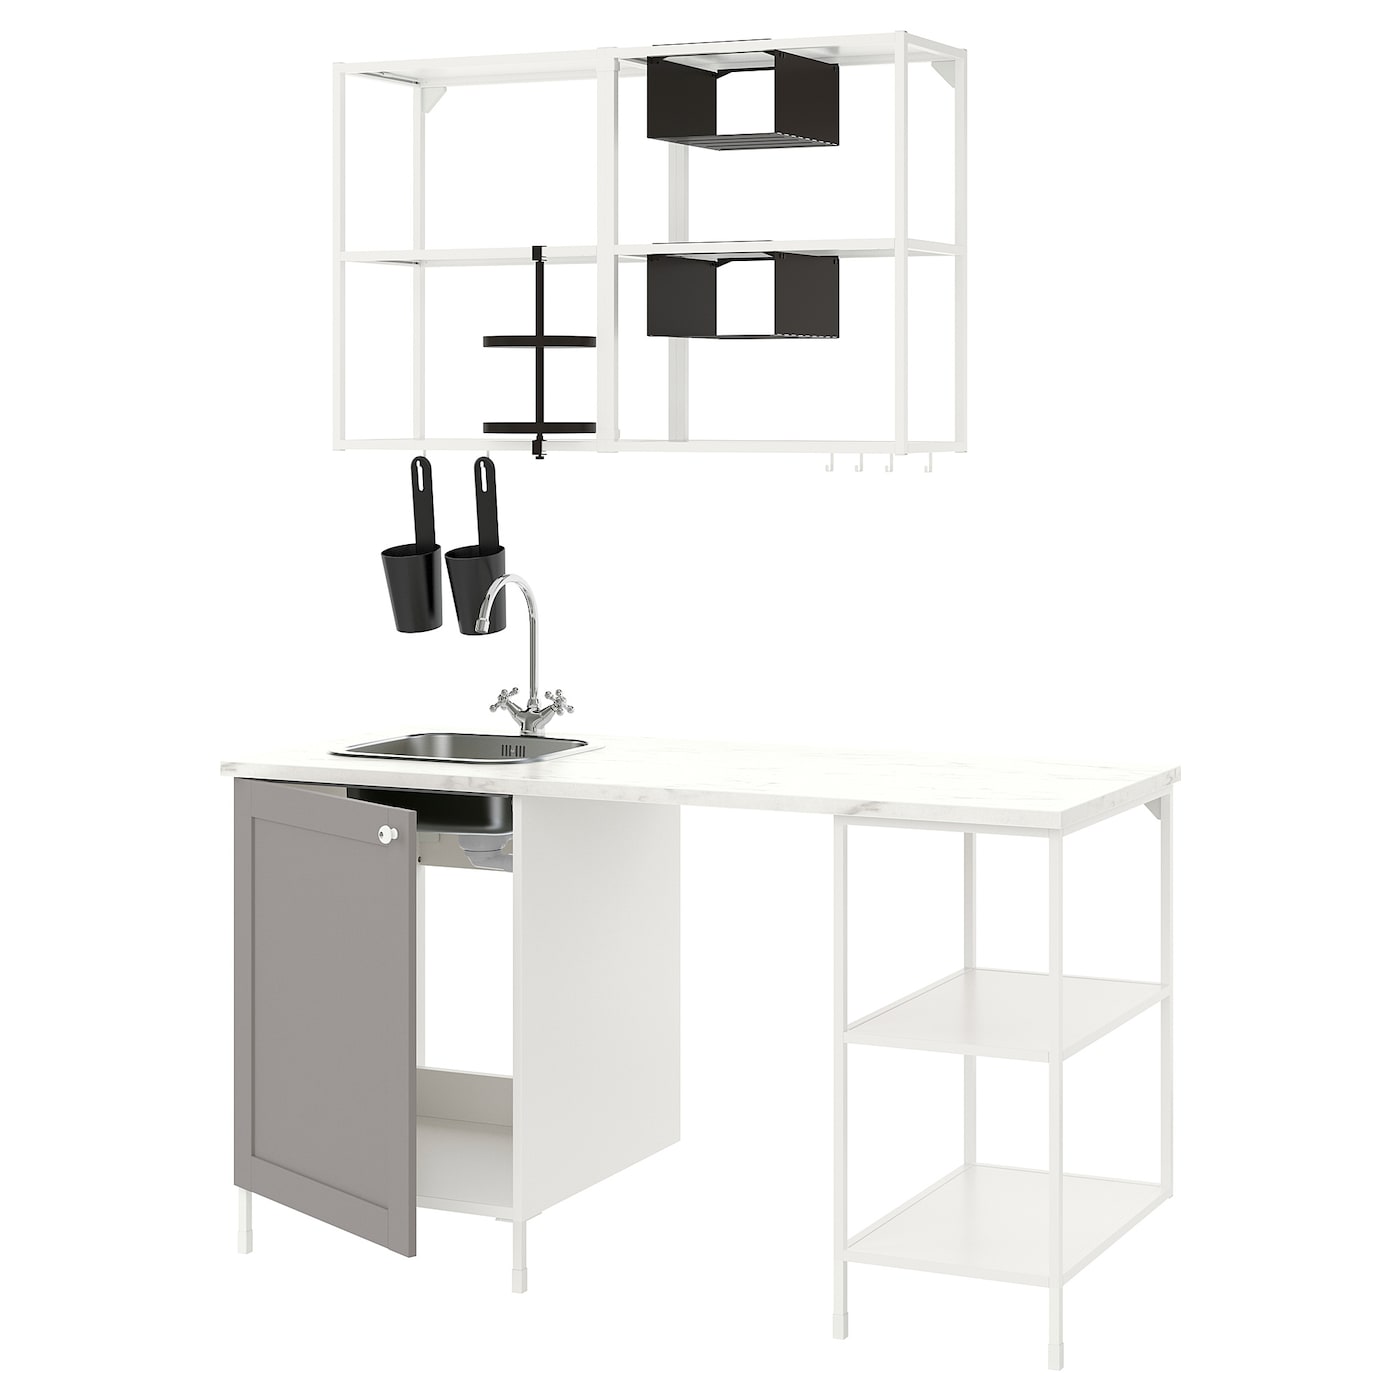 Комбинация для кухонного хранения  - ENHET  IKEA/ ЭНХЕТ ИКЕА, 163x63,5x222 см, белый/серый